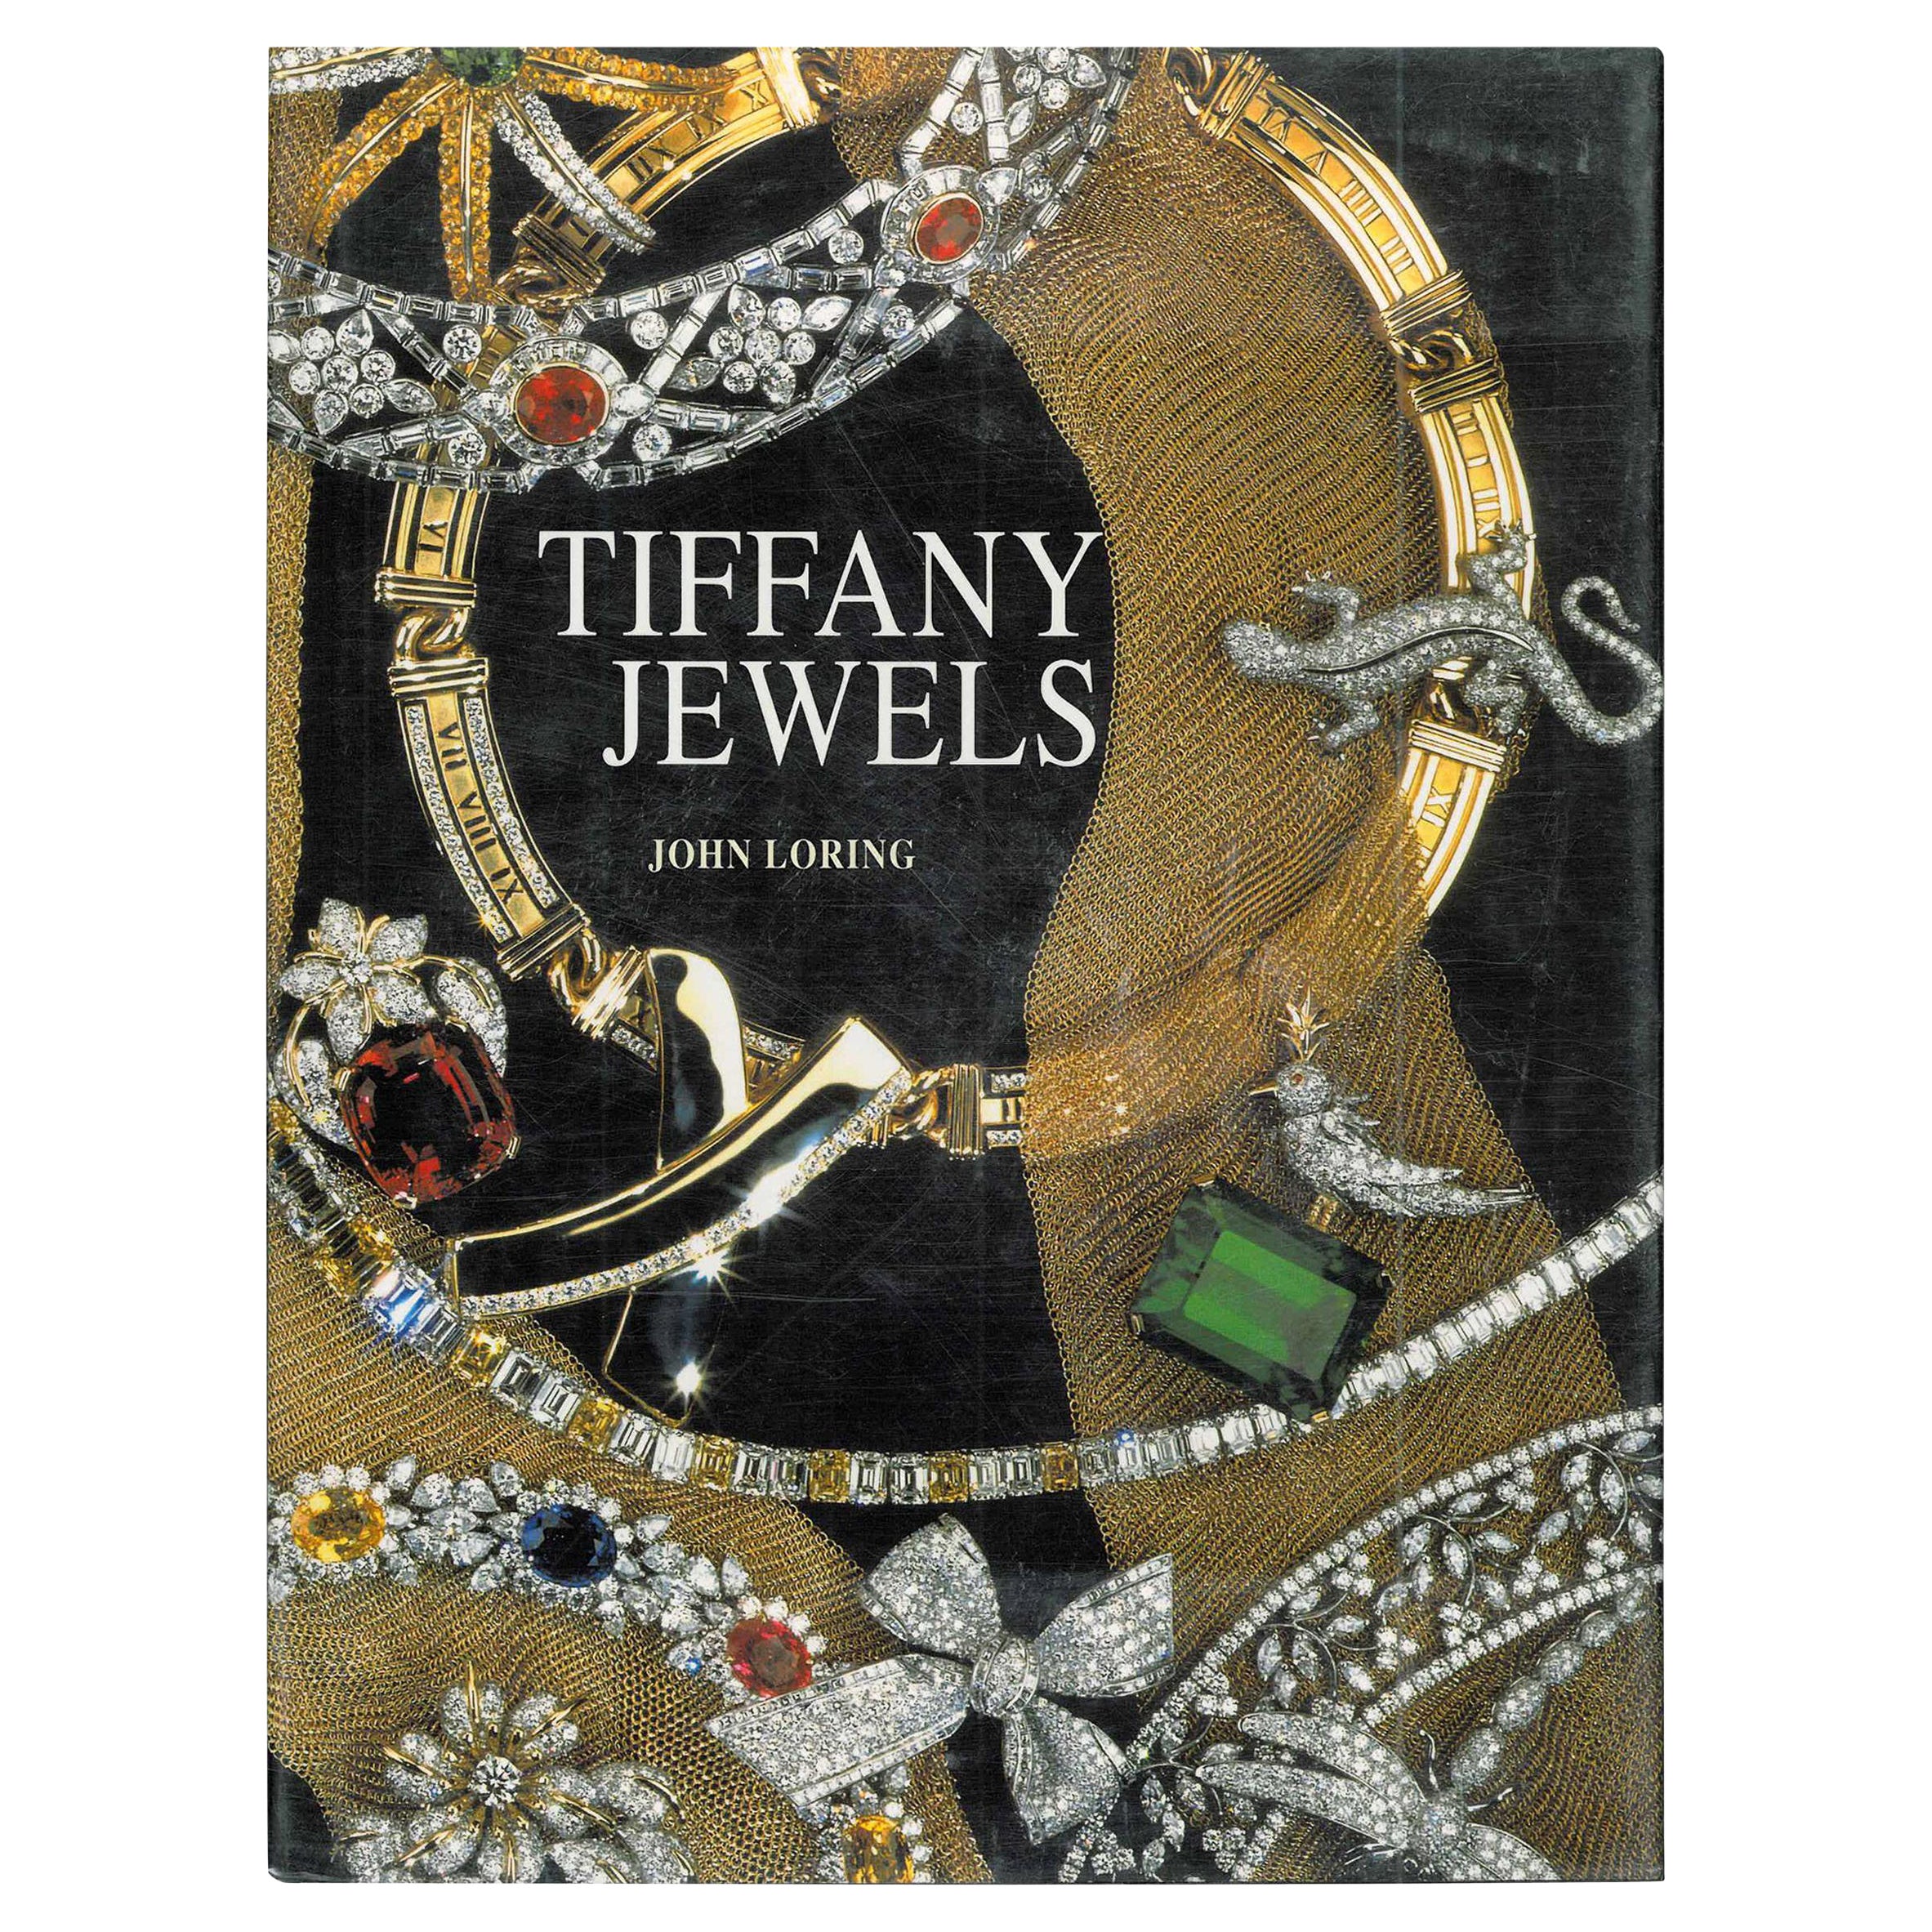 Book of Tiffany Jewels